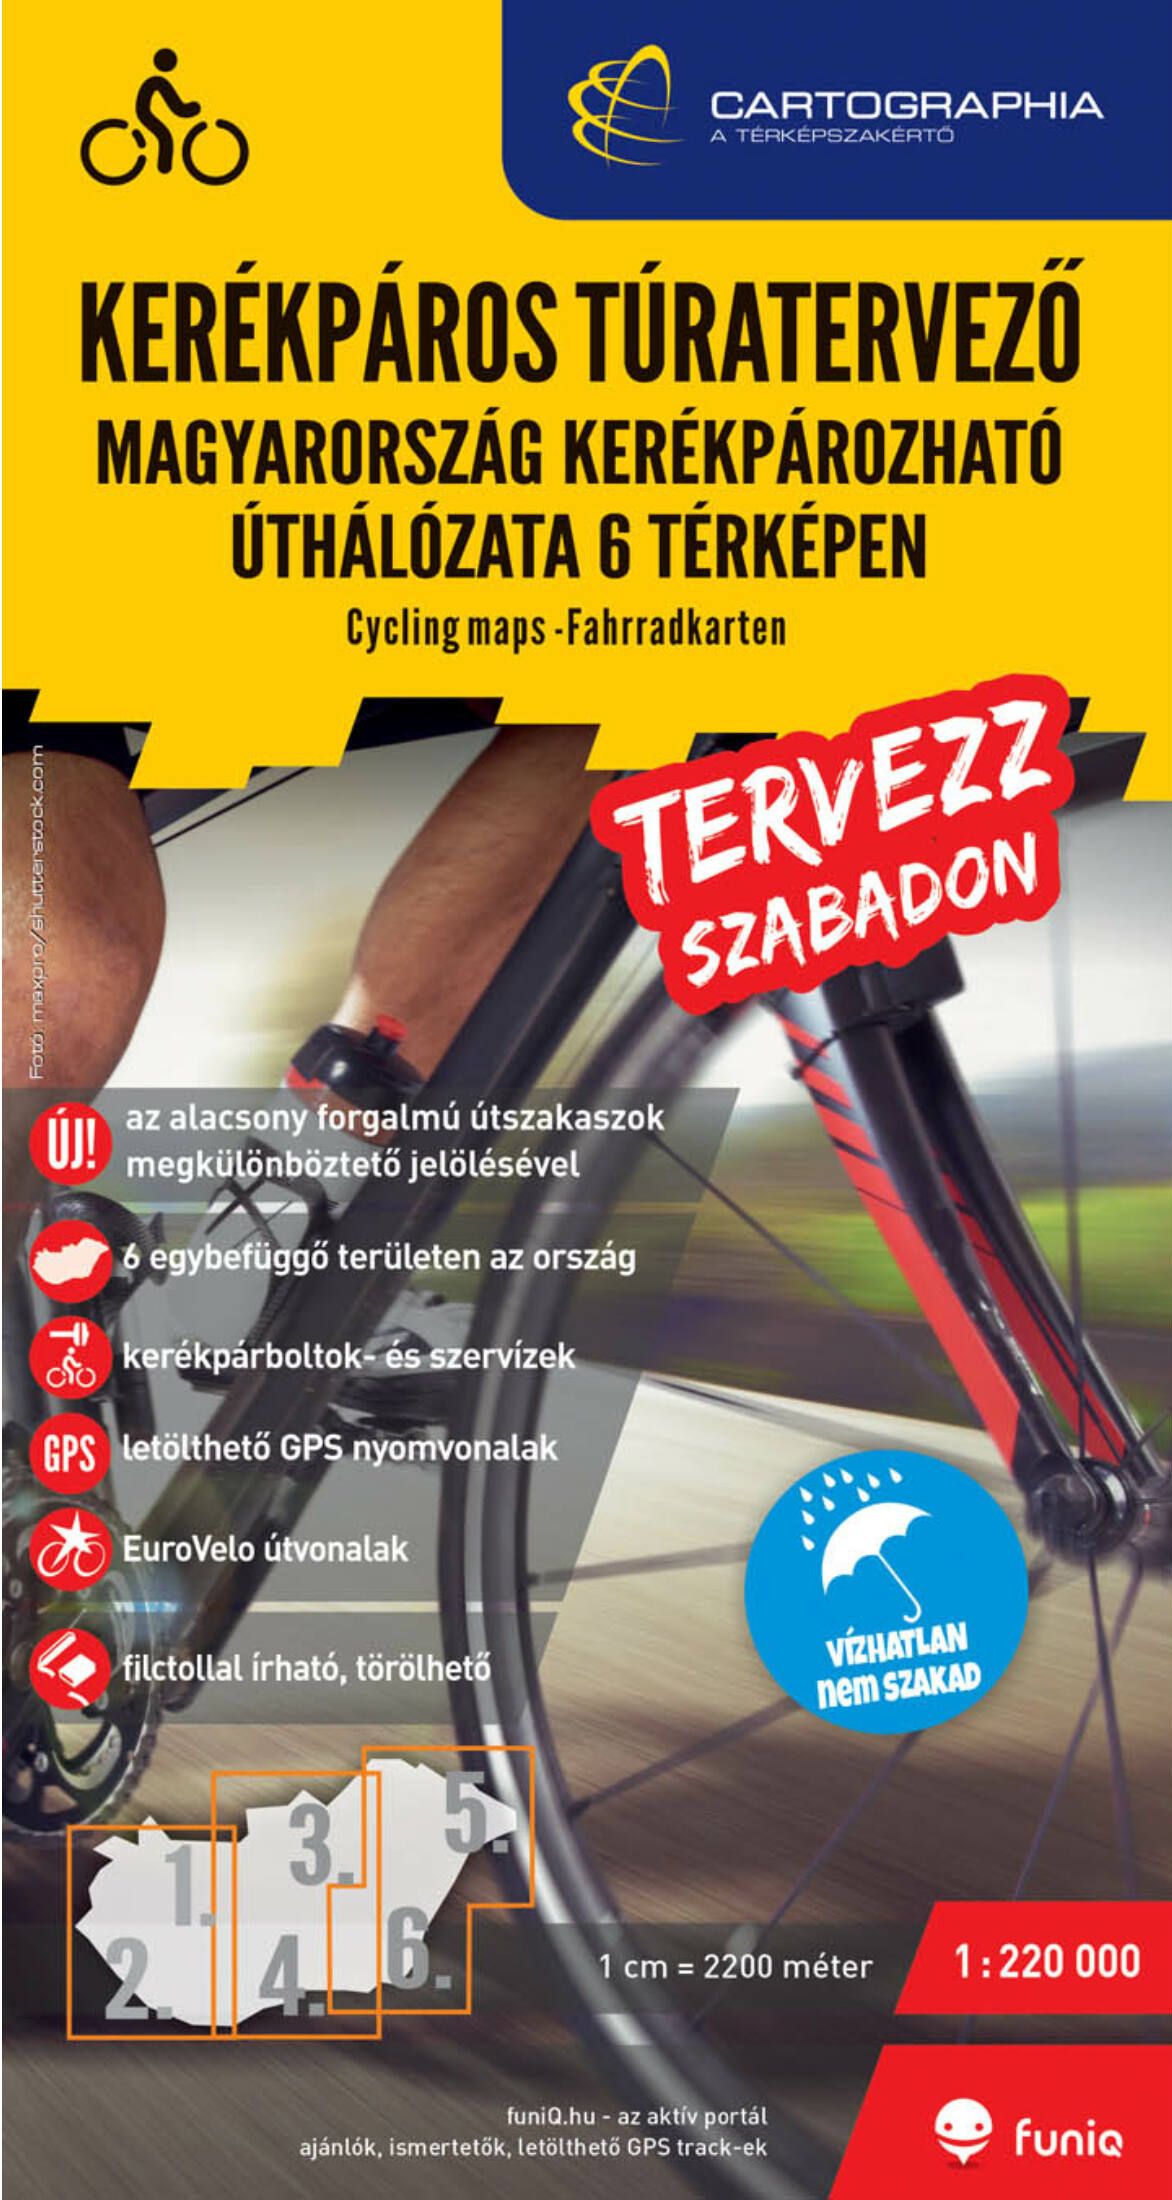 Magyarország kerékpáros túratervező térképe